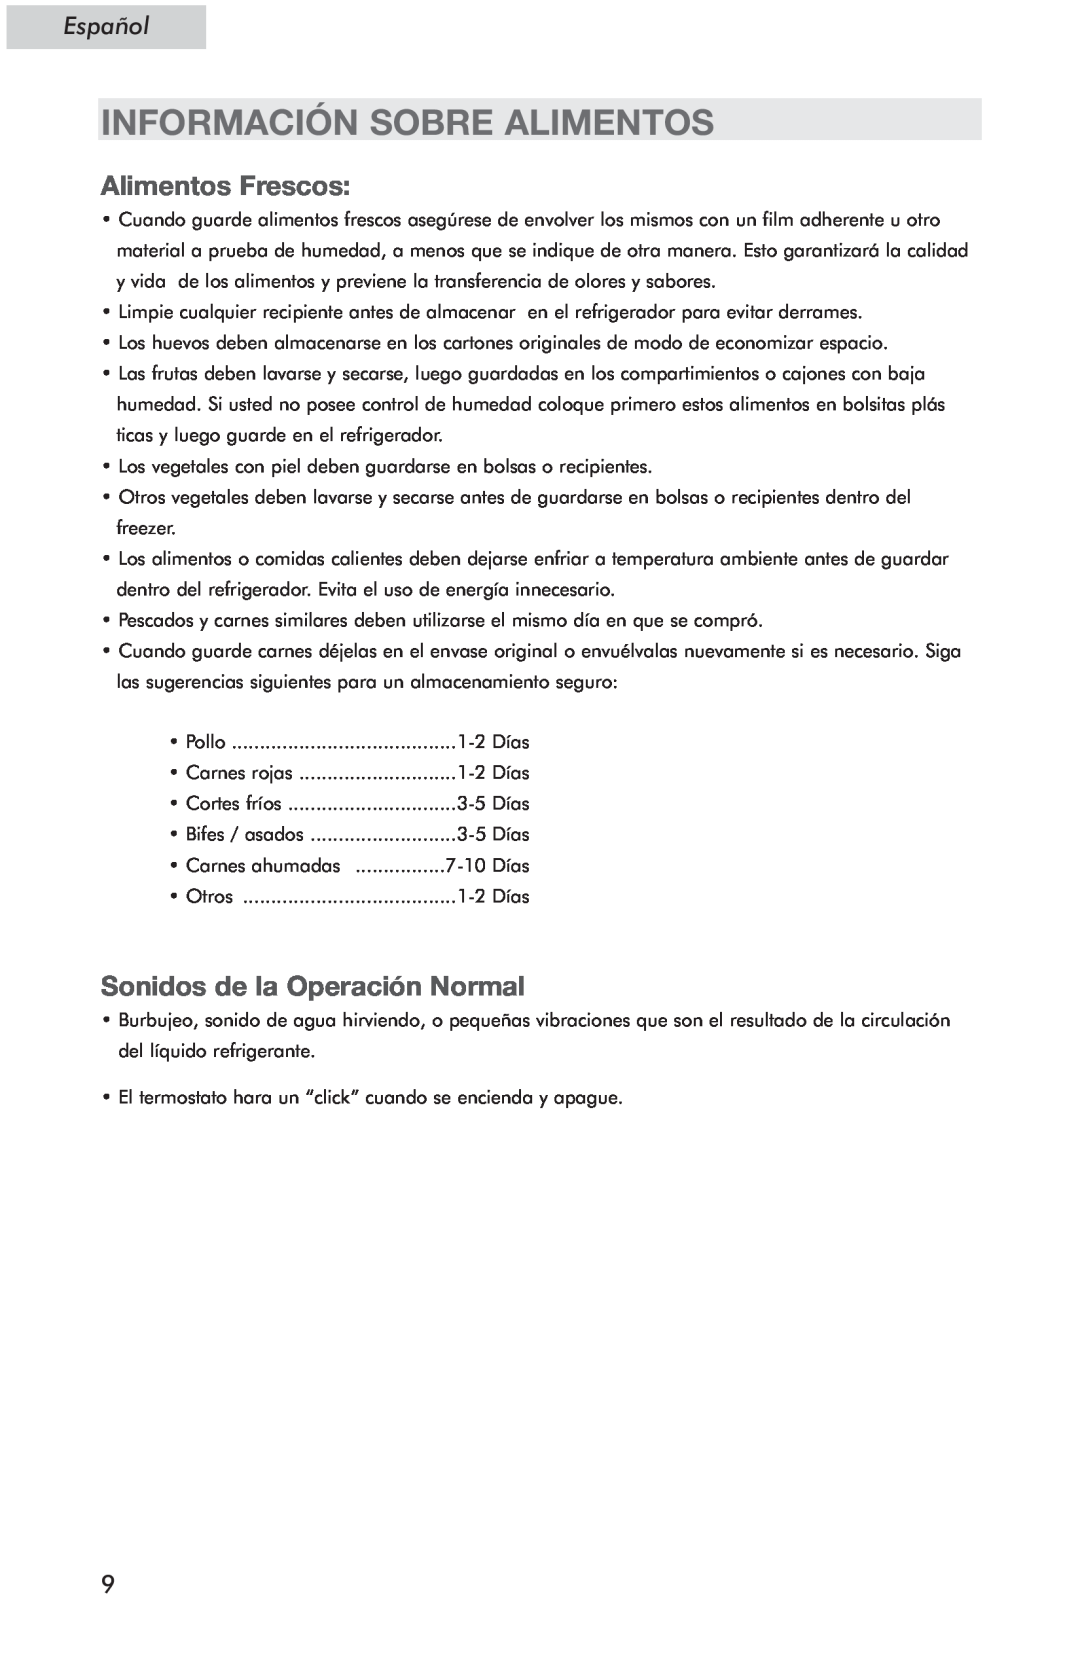 Haier HSE04WNC user manual Información Sobre Alimentos, Alimentos Frescos, Sonidos de la Operación Normal, Español 